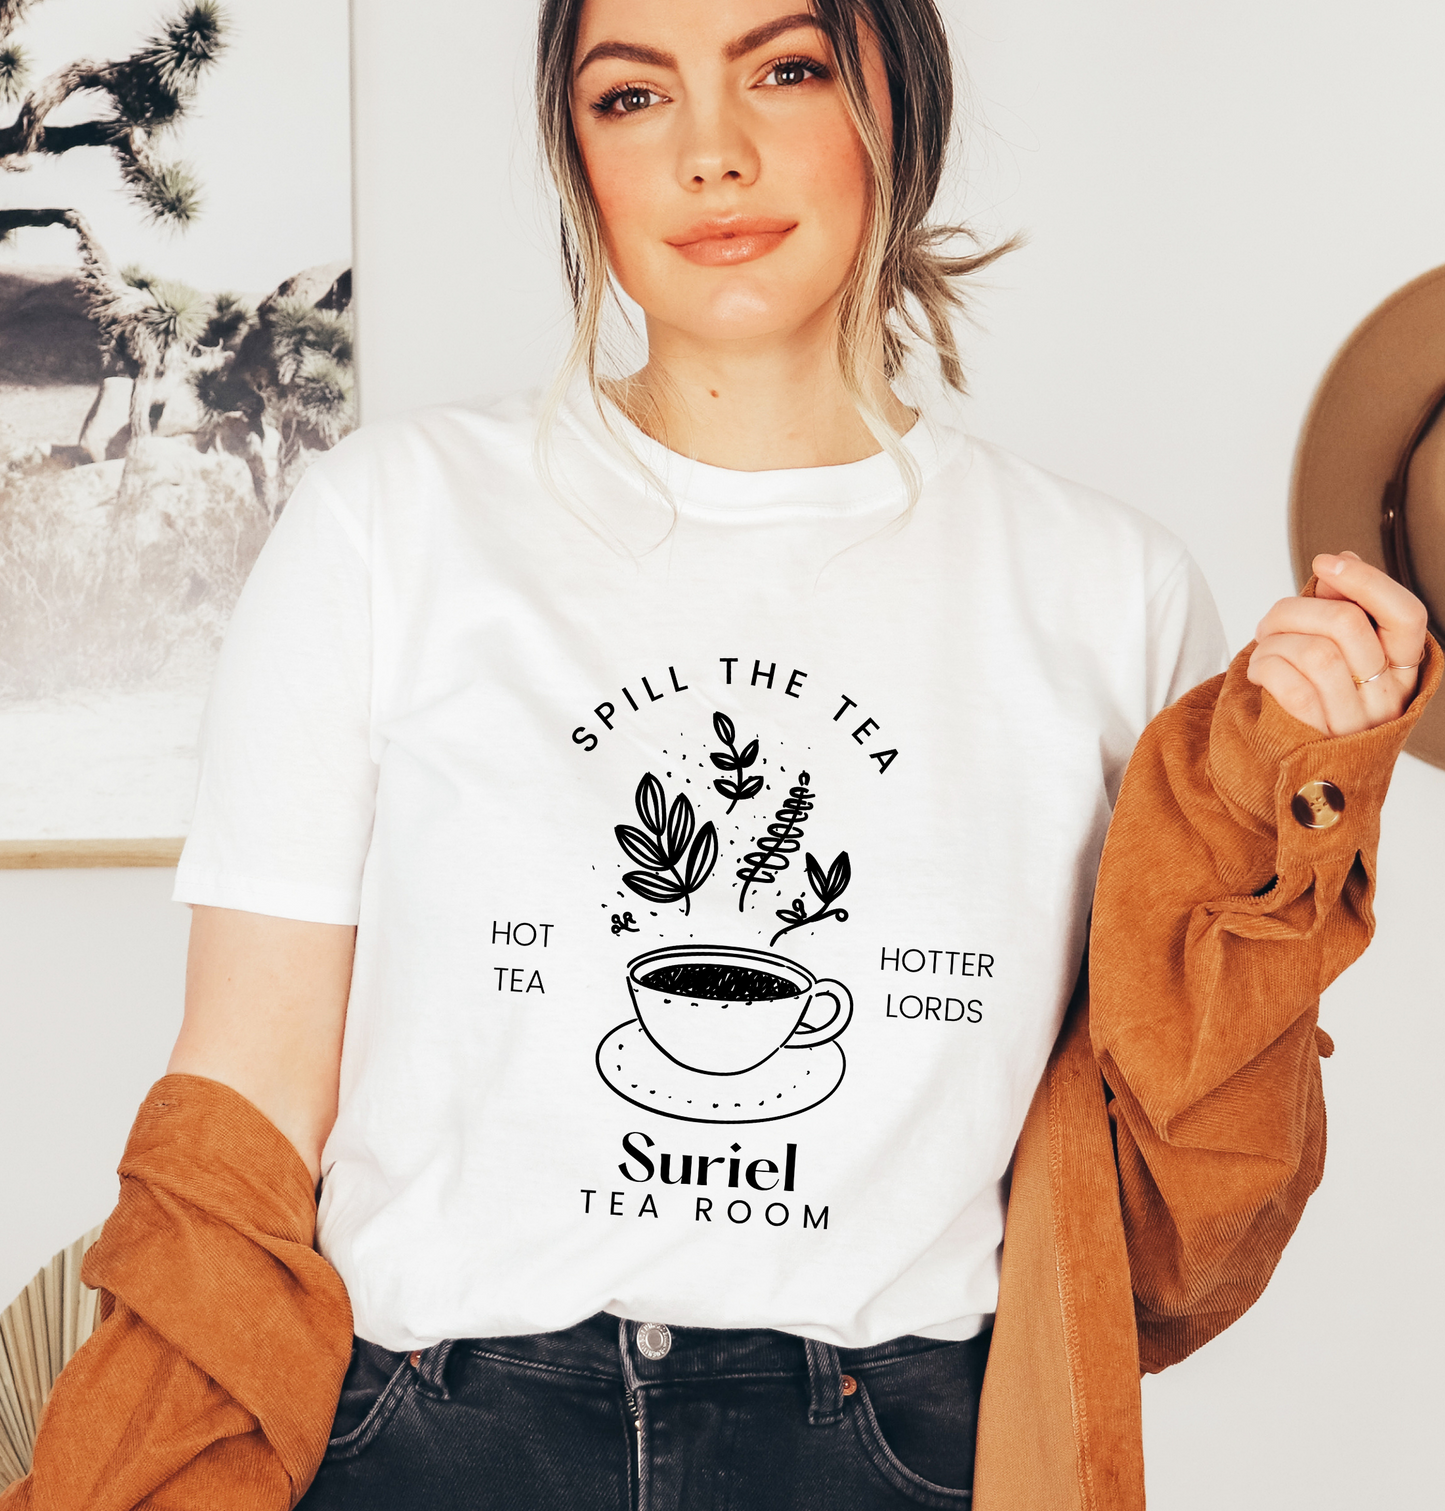 Suriel Tea Room Book Shirt